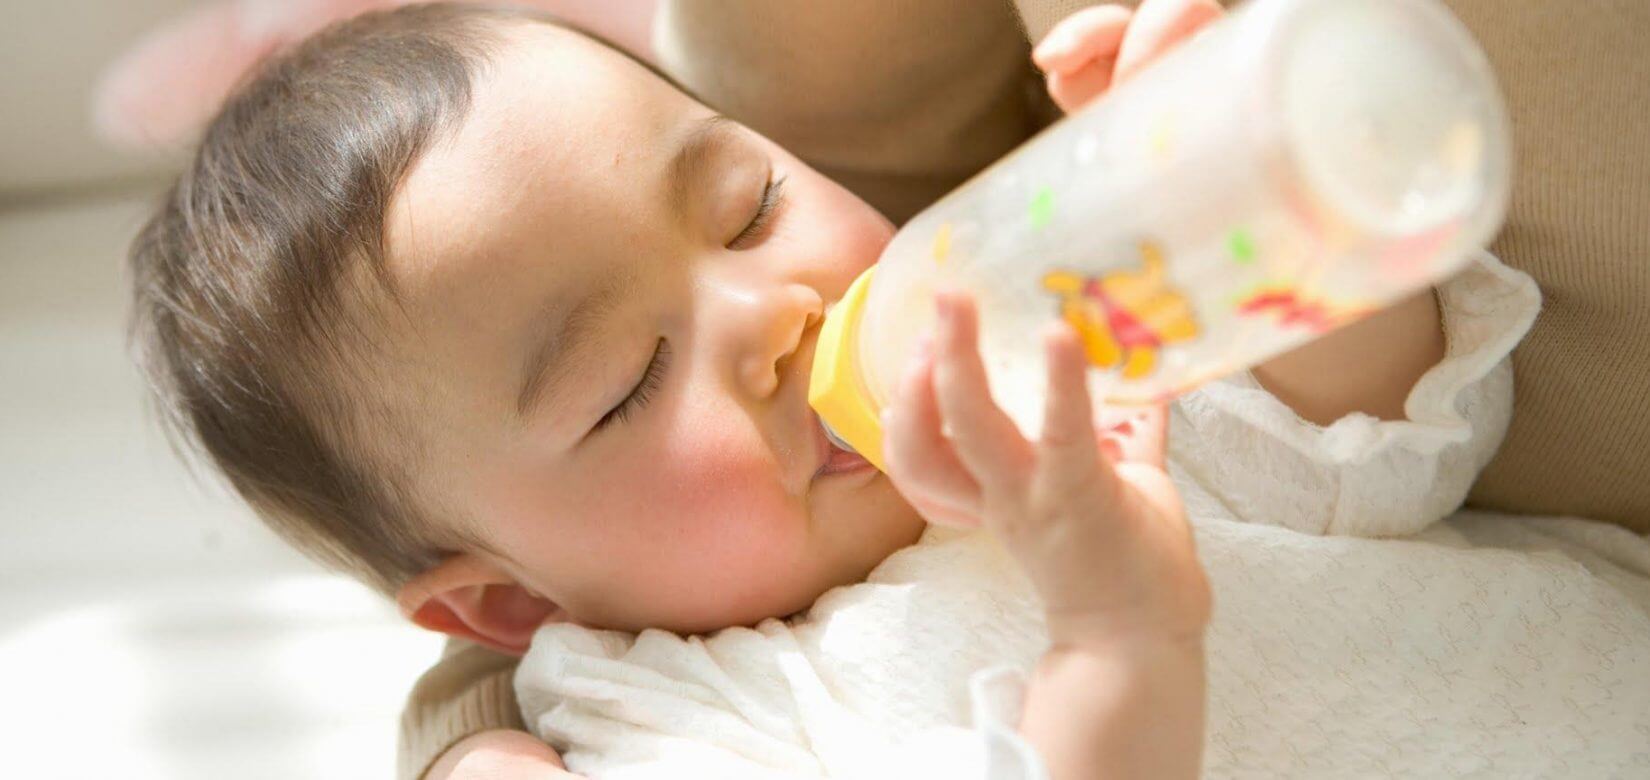 Τα μωρά που κοιμούνται με το μπιμπερό κινδυνεύουν από θέματα υγείας